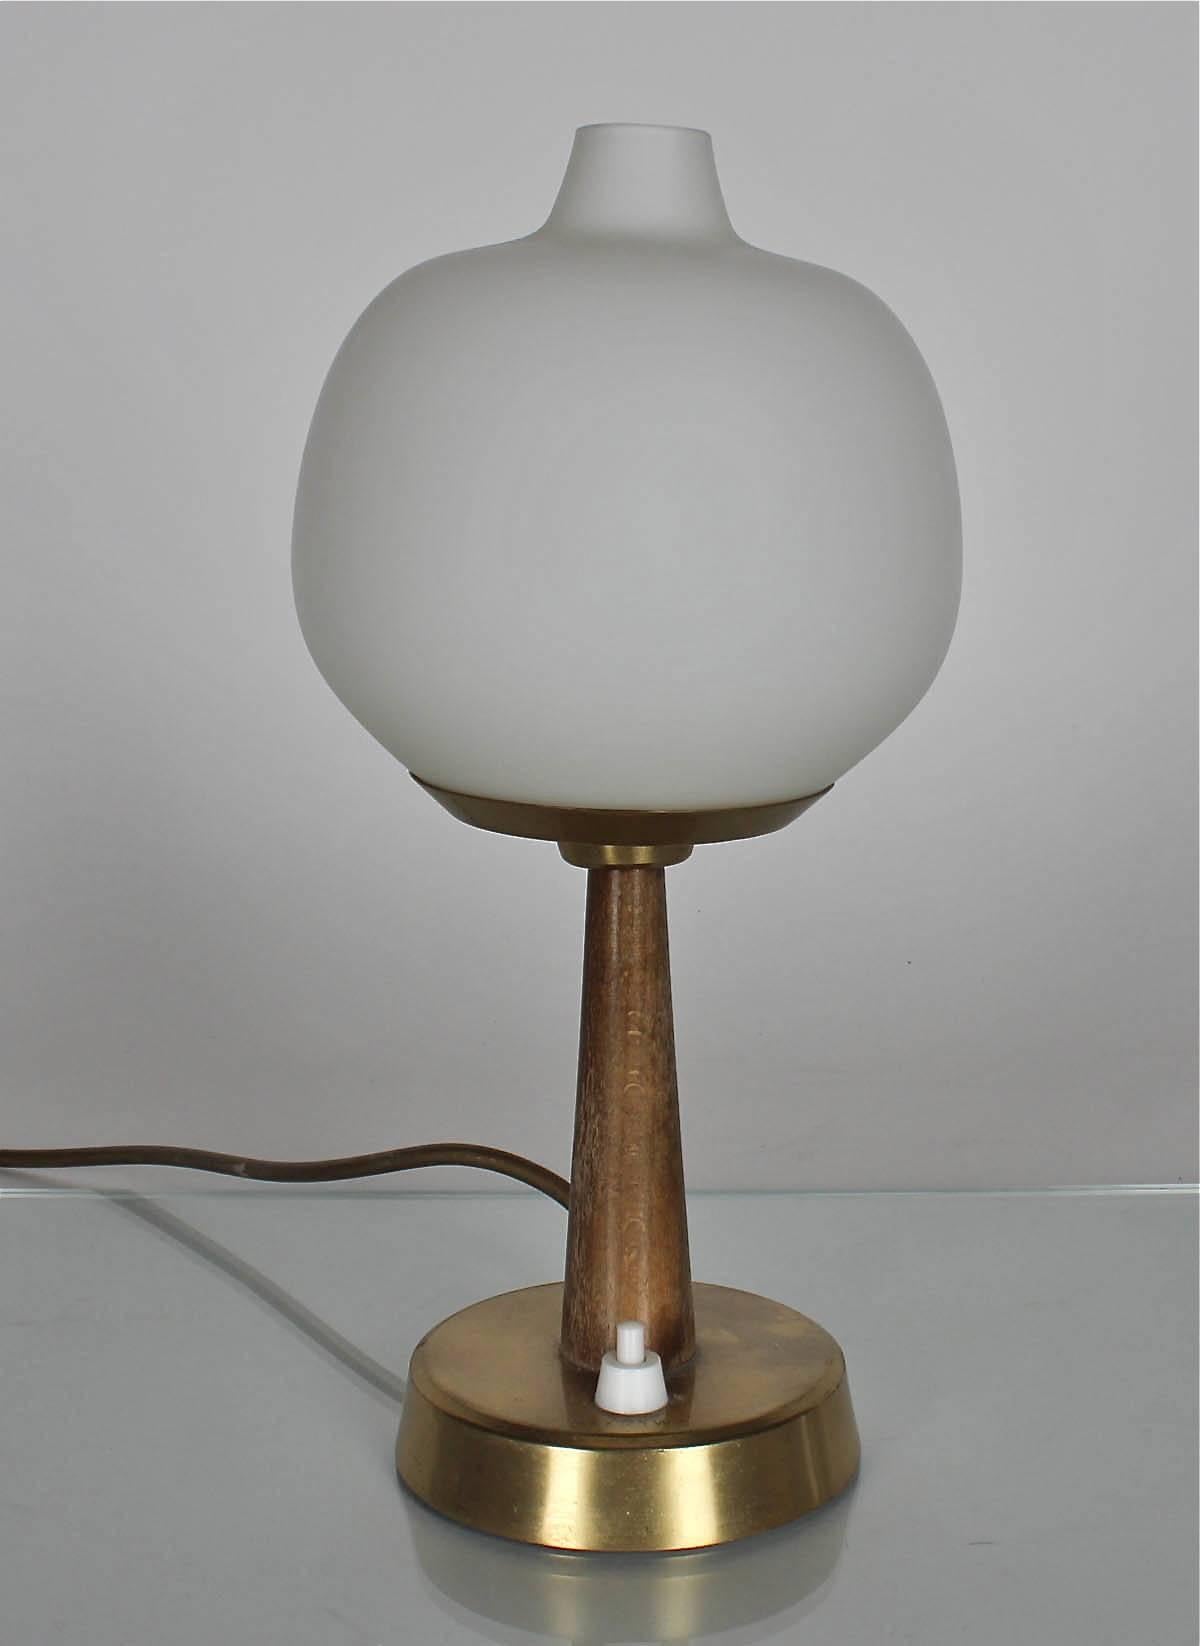 Une lampe de table conçue par Hans Bergstrom pour Ateljé Lyktan, modèle 702. Vers les années 1940.
Abat-jour en verre opalin soufflé à la main sur une base en hêtre et laiton. Marqué par le fabricant.
Mesures : H 11